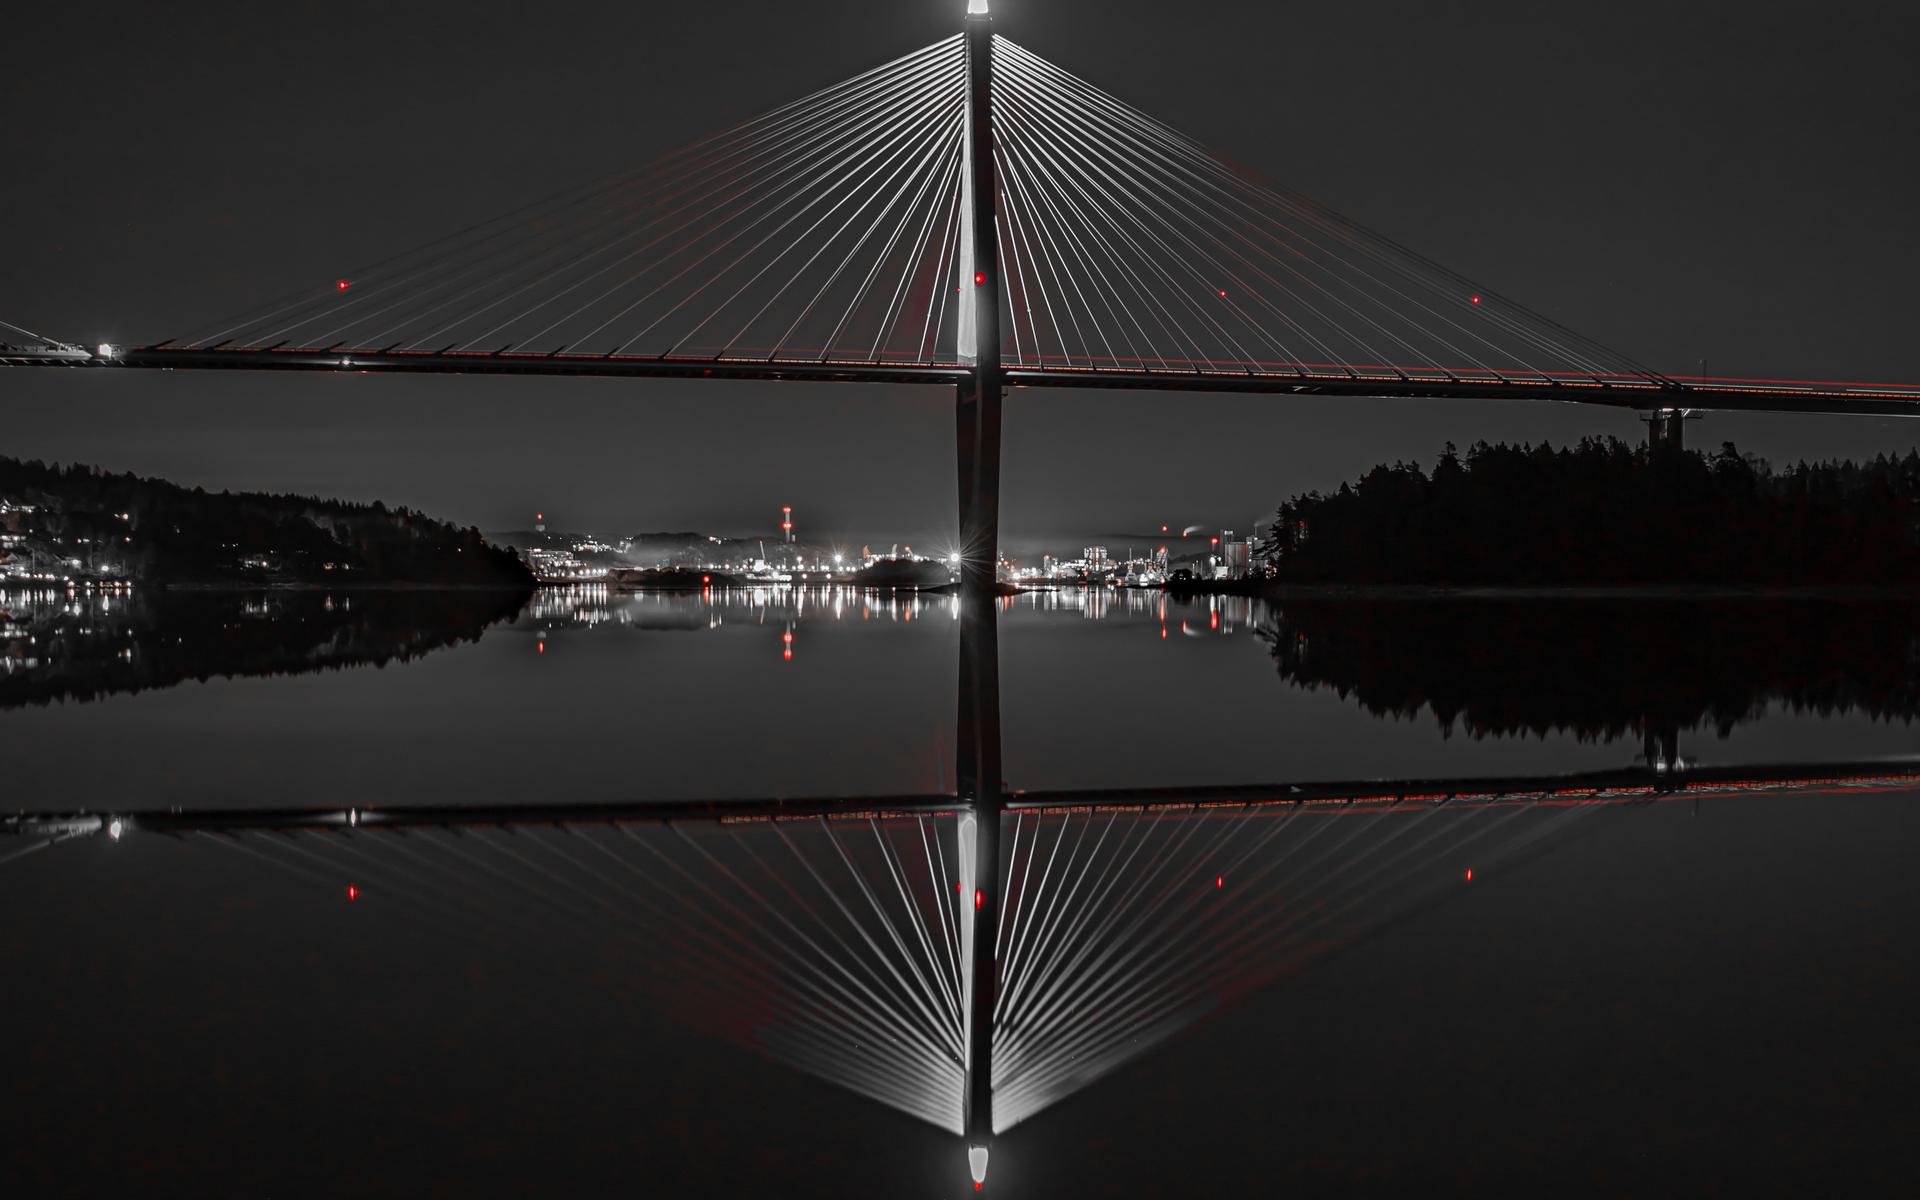 ”Här kommer mitt bidrag i tävlingen. Den är tagen från utloppet av Byfjorden med våran vackra bro som inramar innerstaden. Det är ju lätt att vara fotograf med så vackra föremål.”